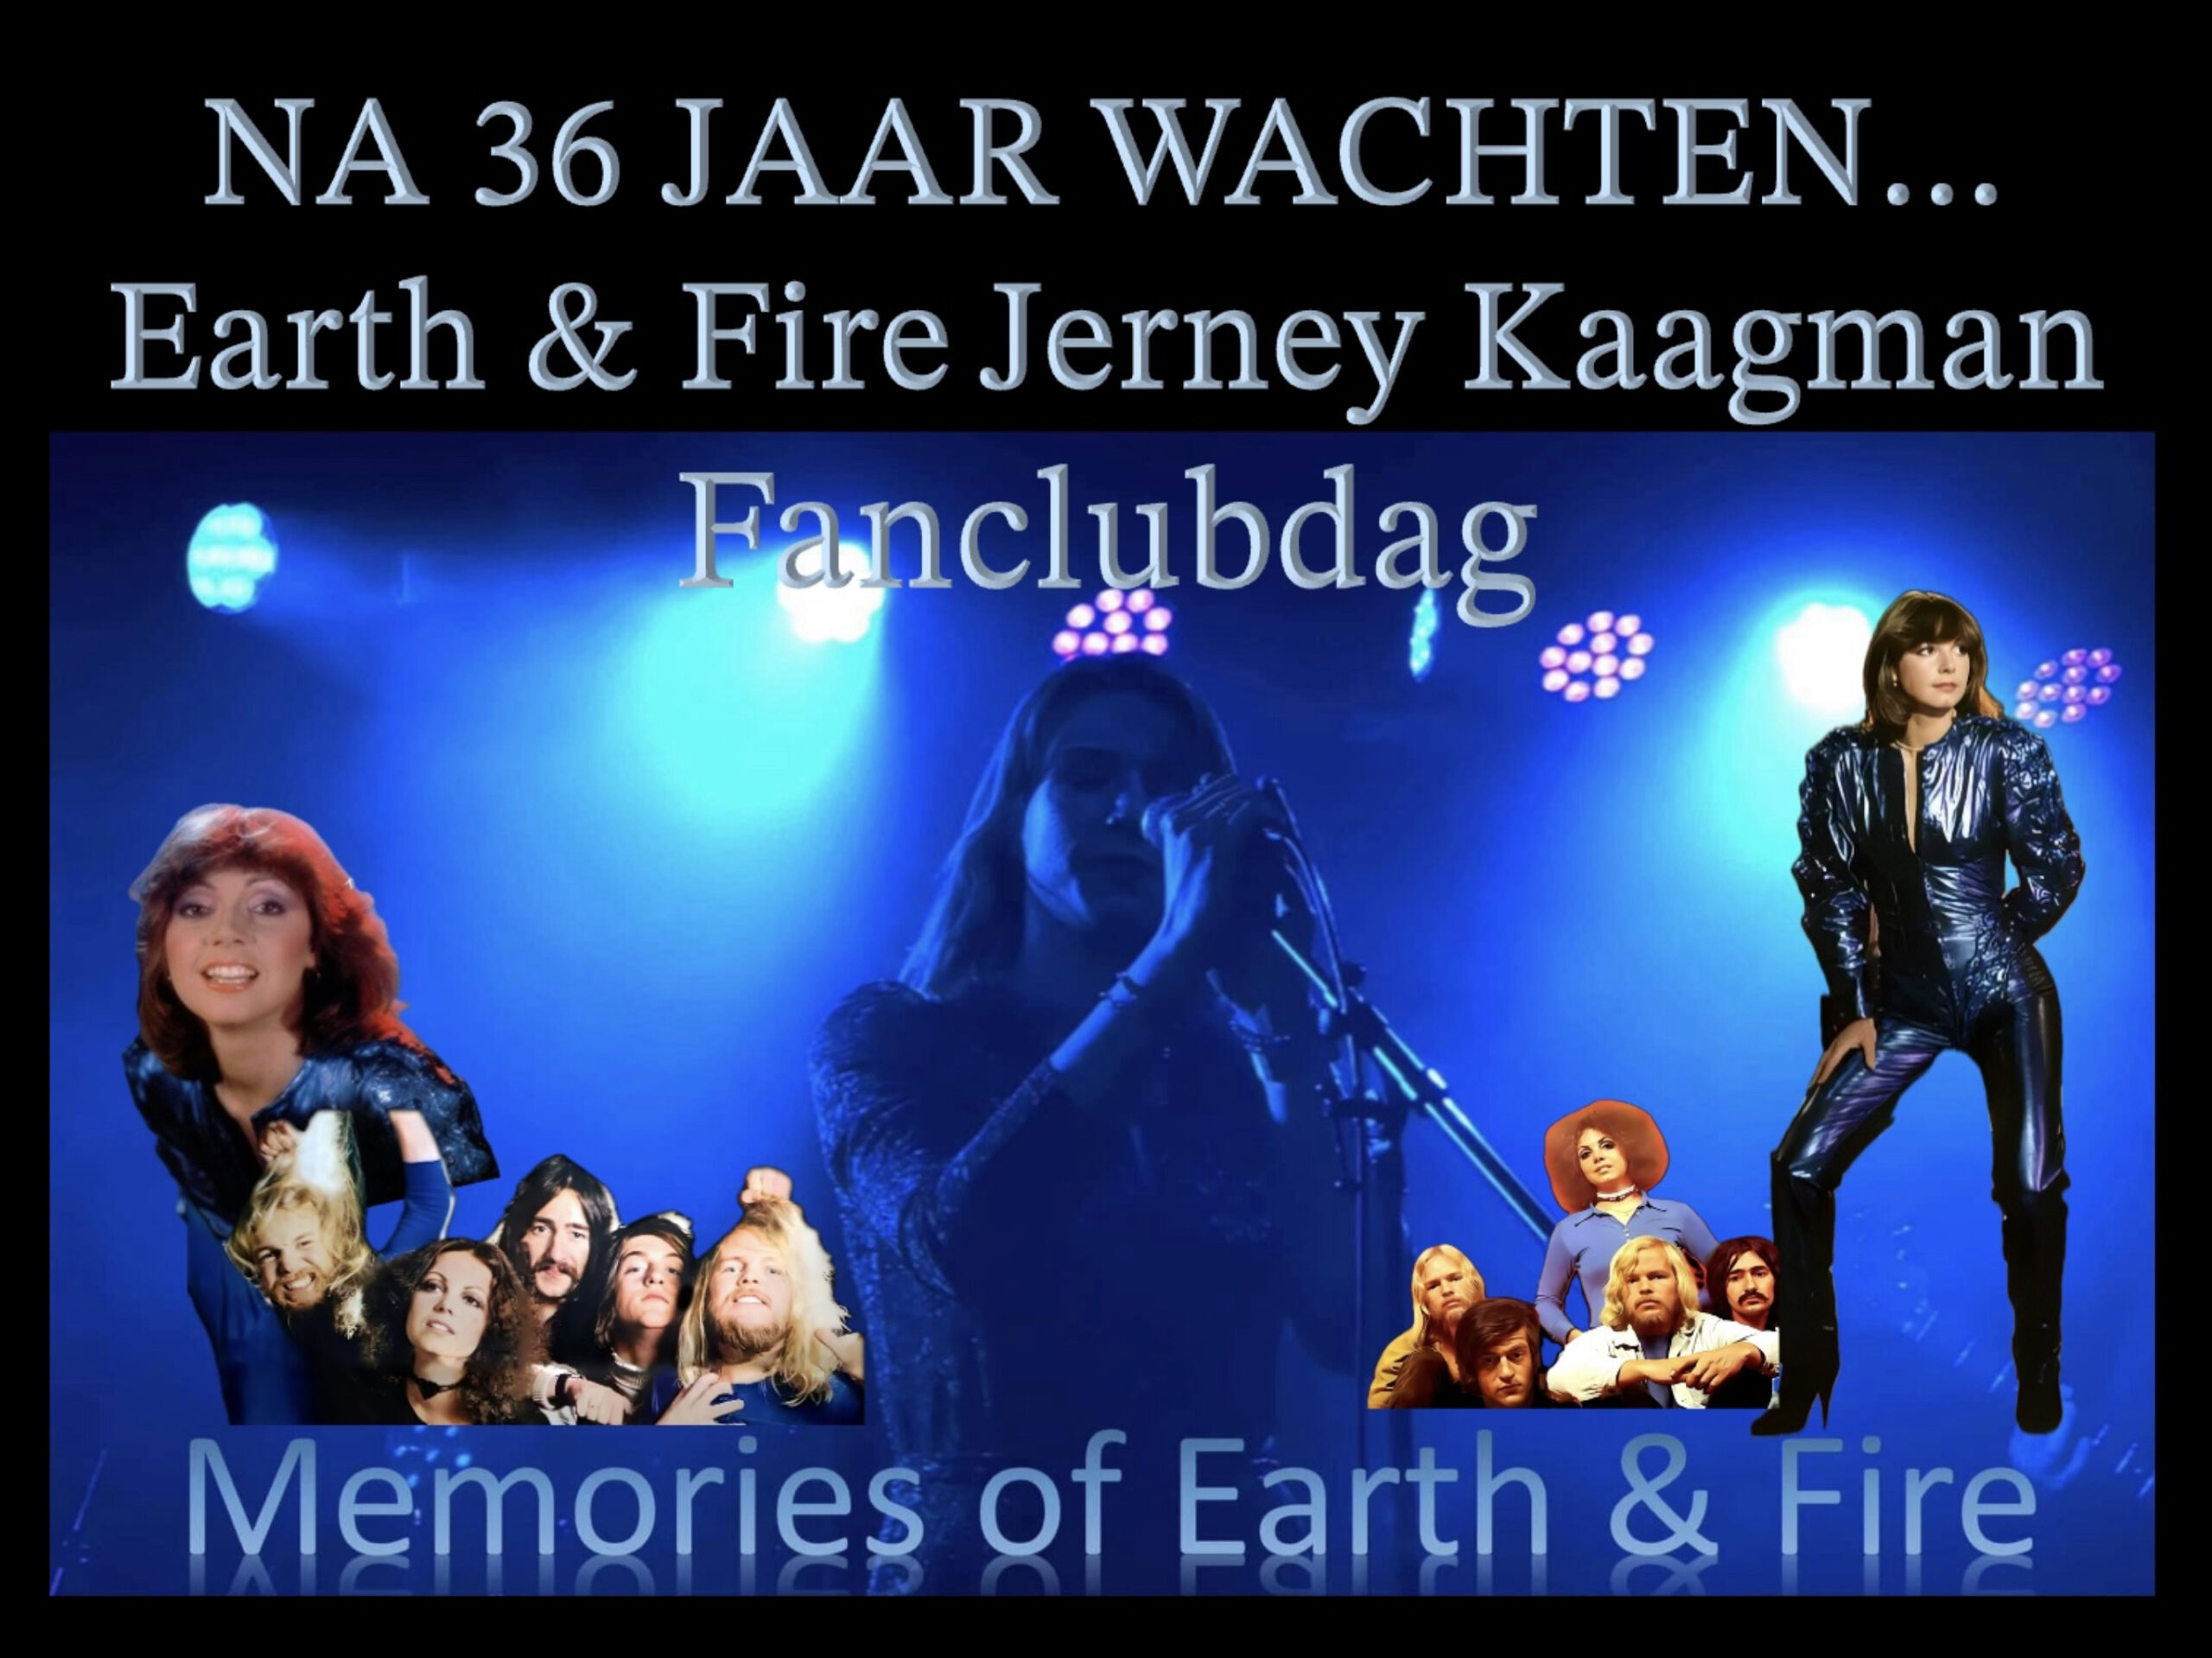 Earth & Fire – Jerney Kaagman Fanclubdag met “Memories of Earth & Fire”